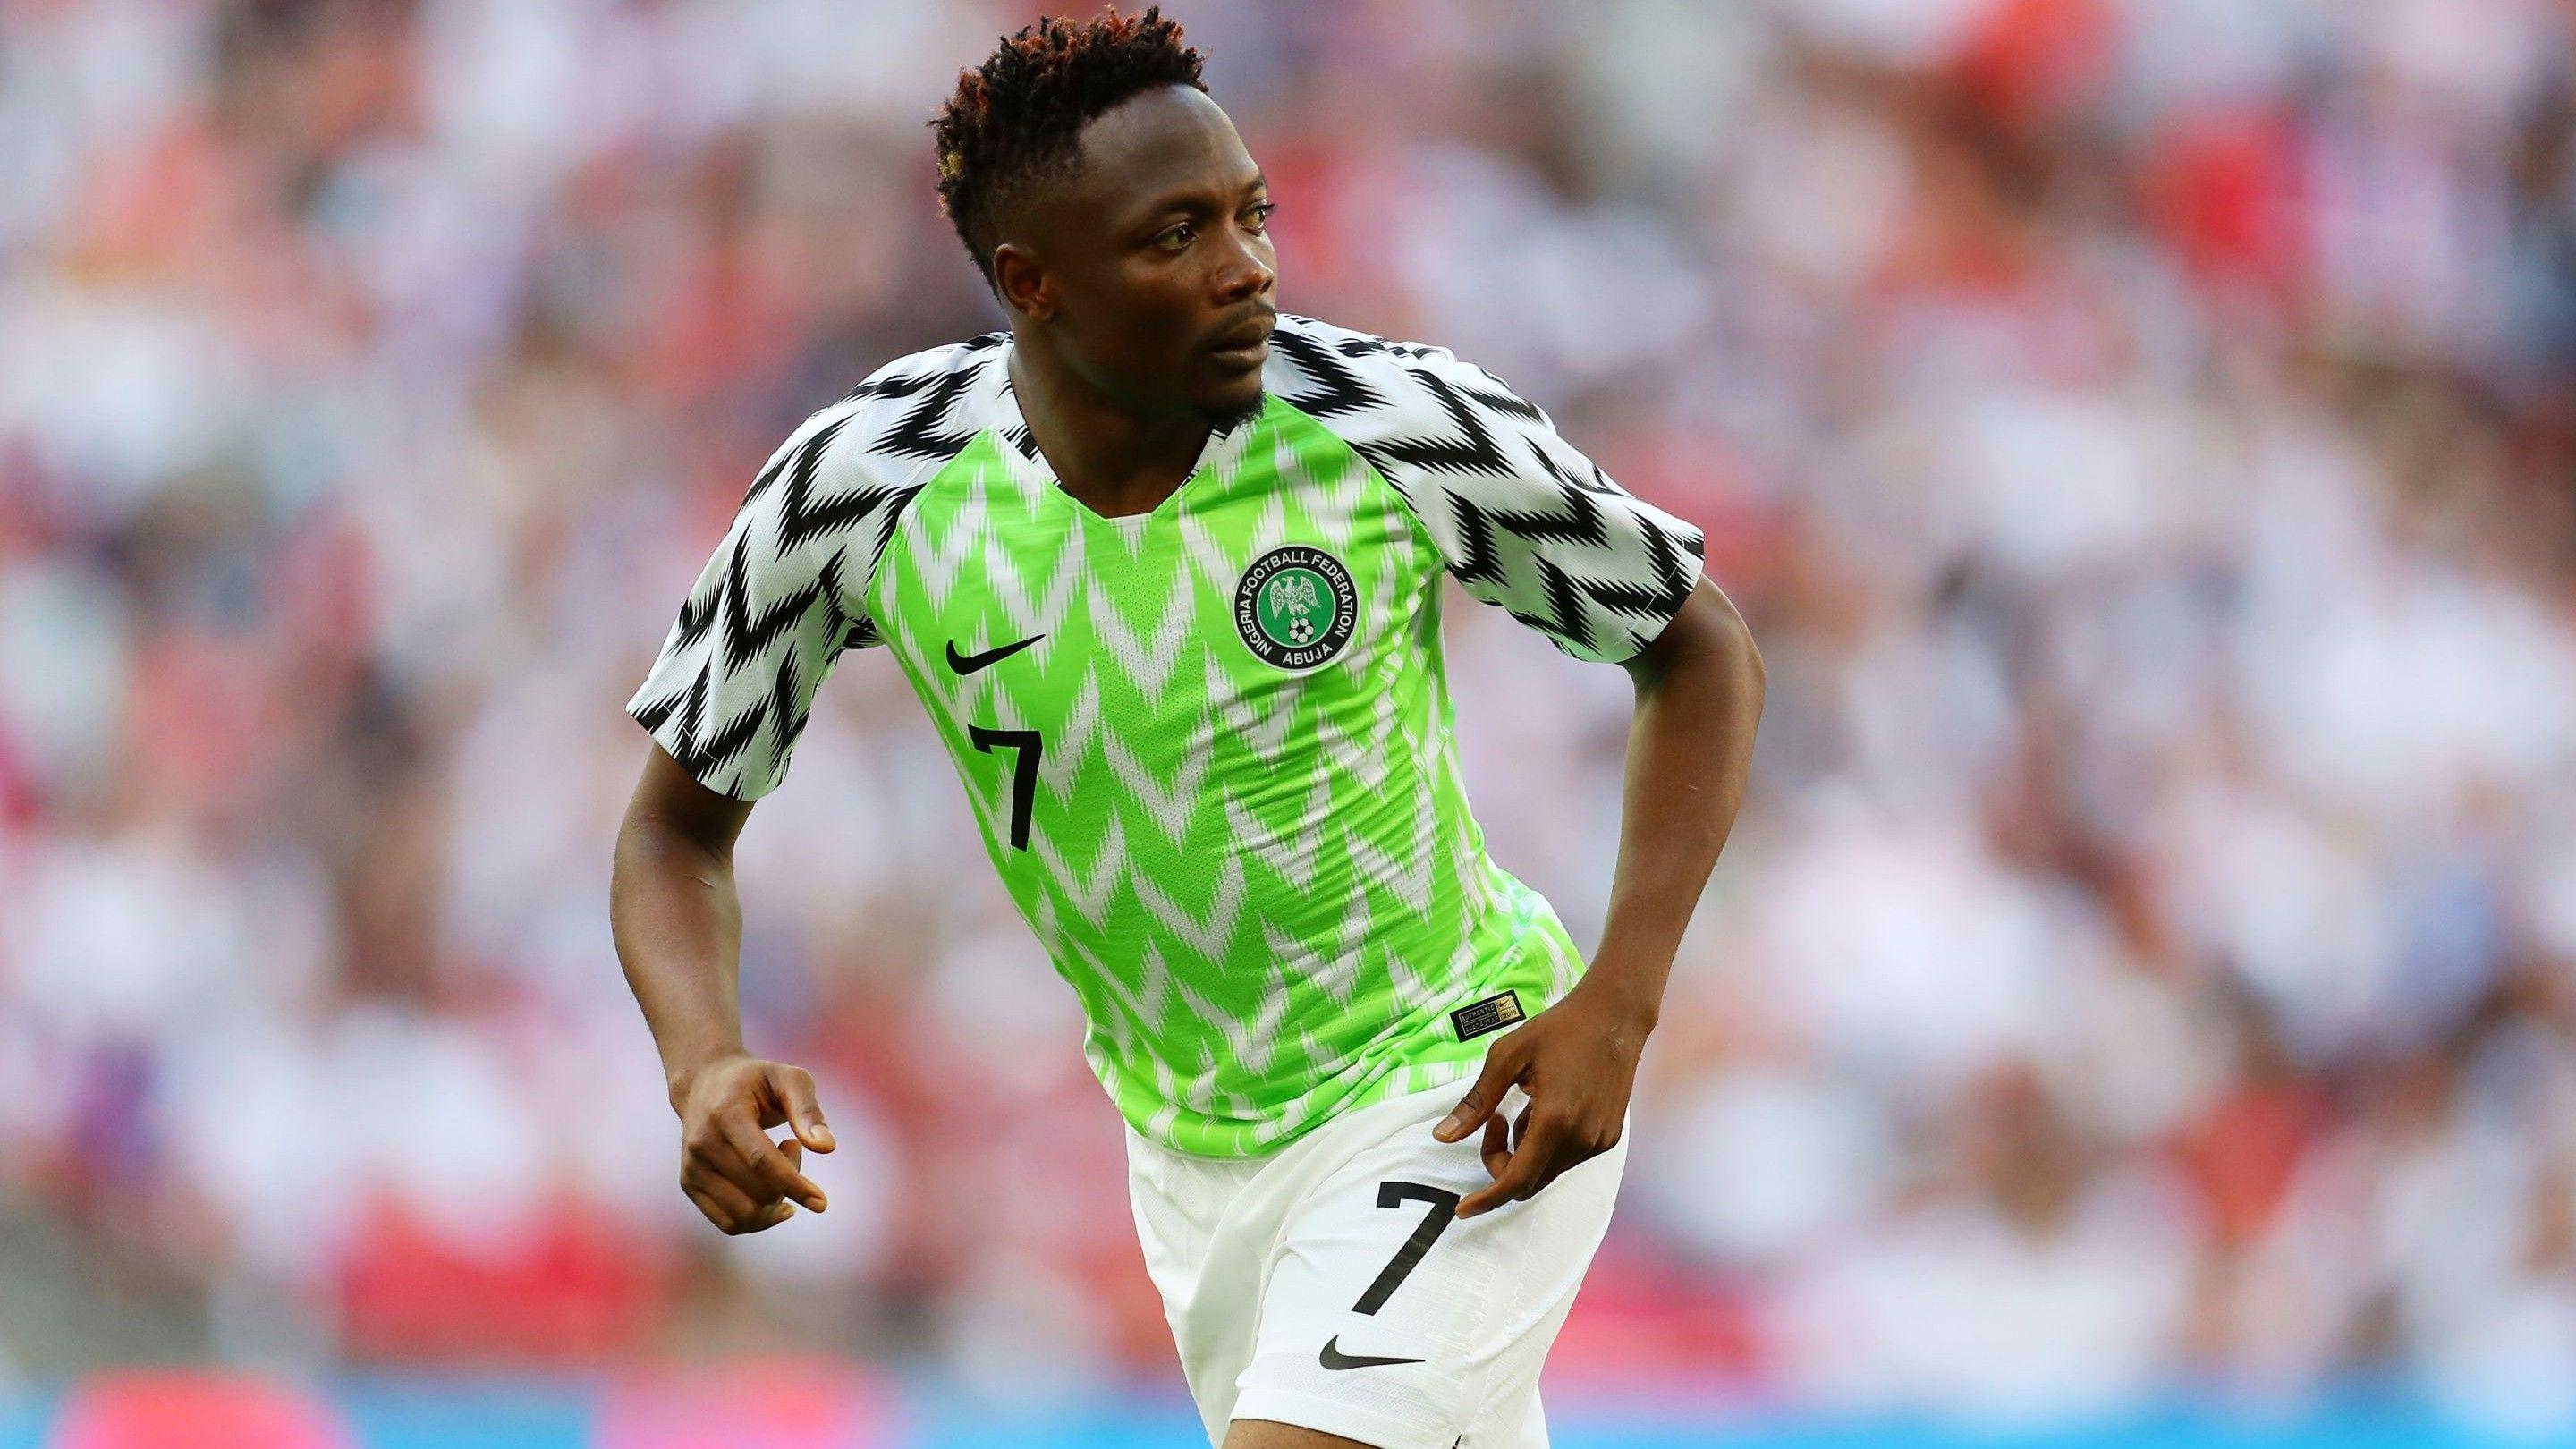 Ahmed Musa Nigerian Footballer in Fifa World Cup 2018 Wallpaper. HD